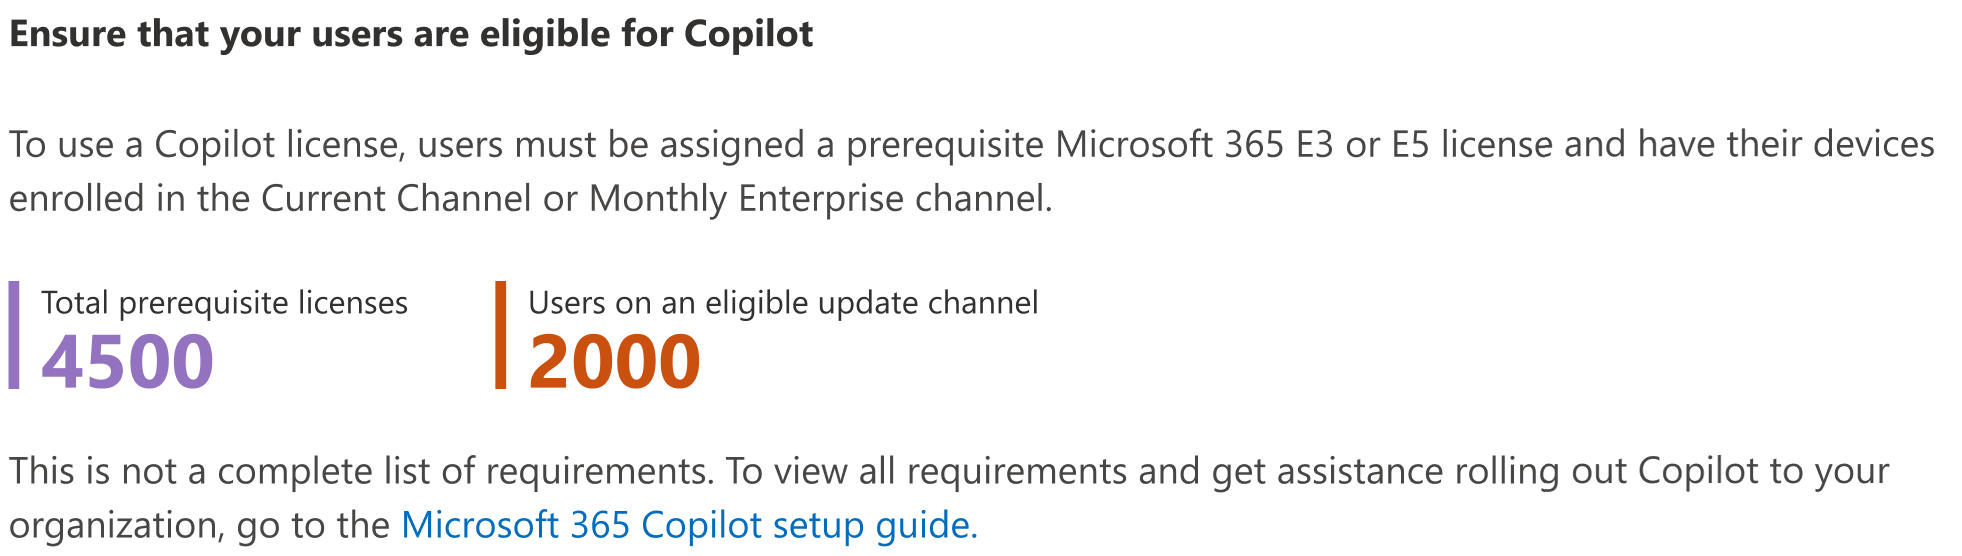 Képernyőkép arról, hogyan biztosíthatja, hogy a felhasználók jogosultak legyenek a Microsoft 365-höz készült Copilot használatára.